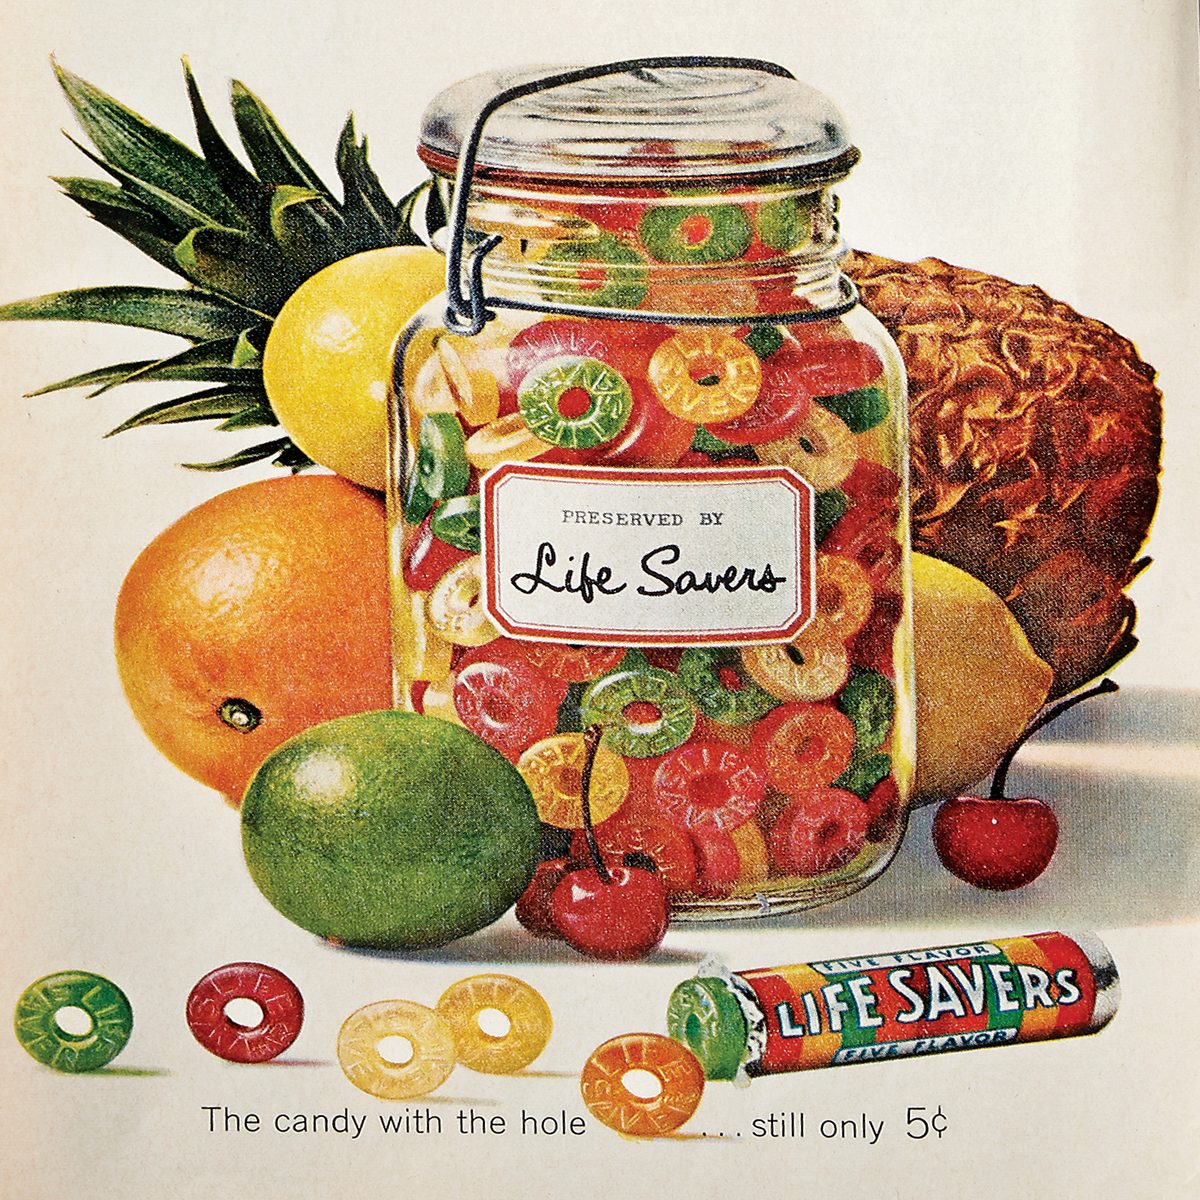 15-vintage-food-ads-grandma-perused-in-her-favorite-magazines